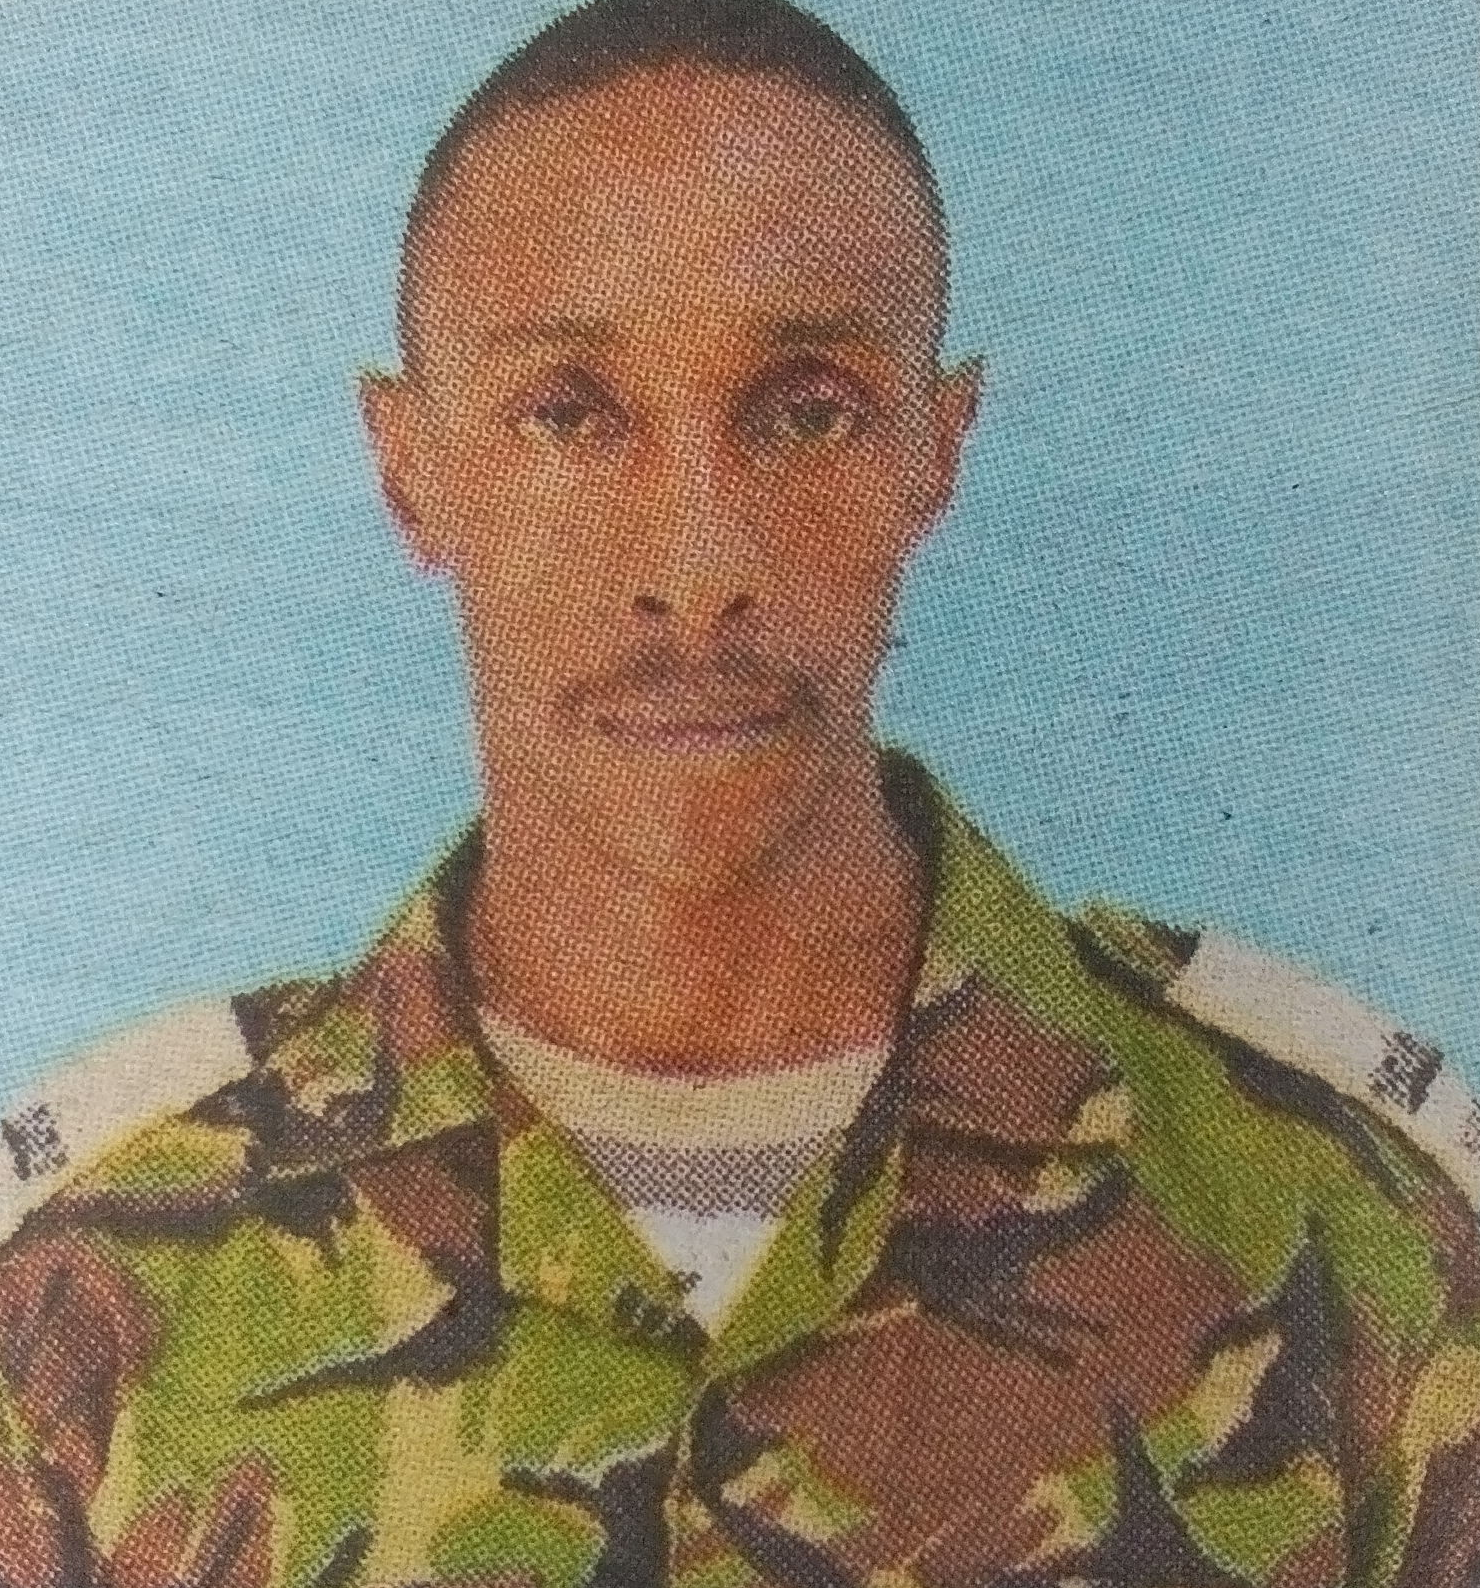 Obituary Image of Major Stephen Minungo Mwangi